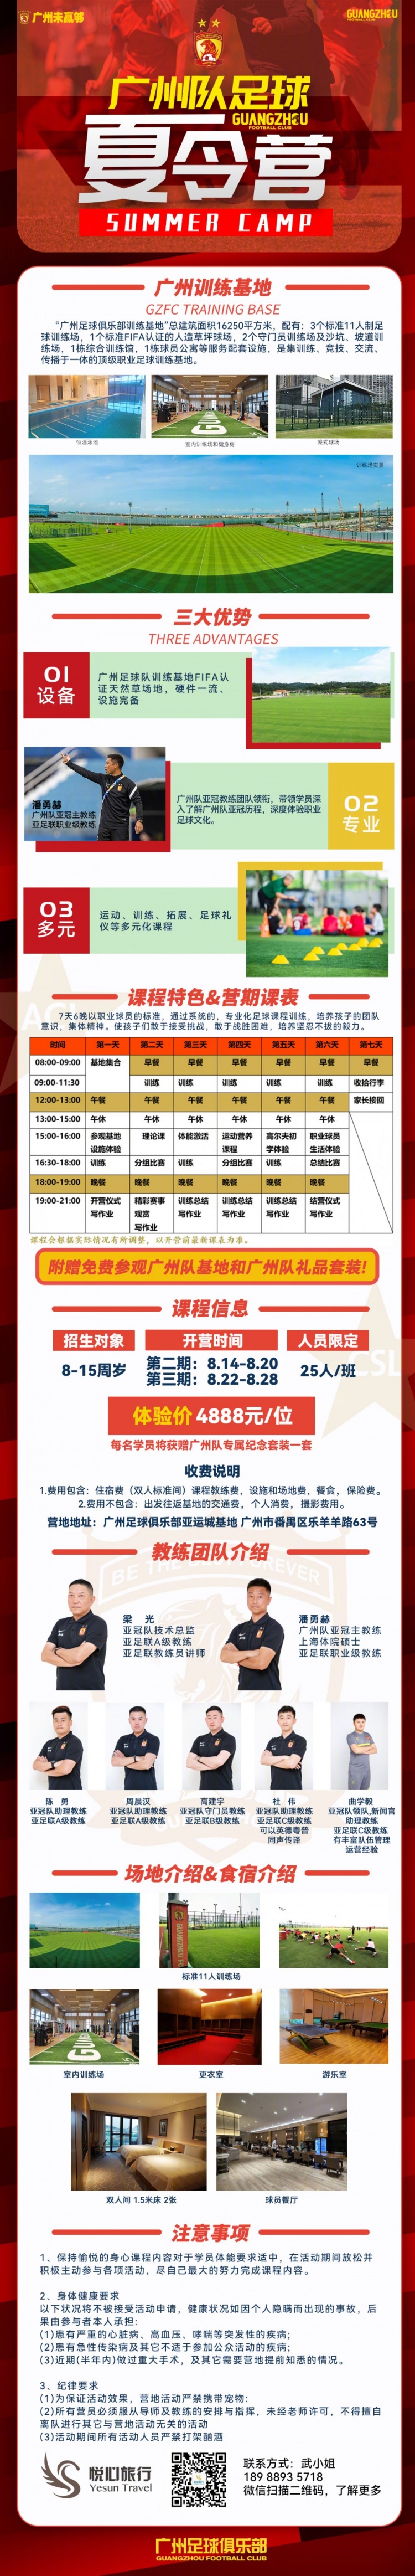 【QY球友会】广州队官方发布夏令营第三期招生公告，7天6晚价格为4888元/位